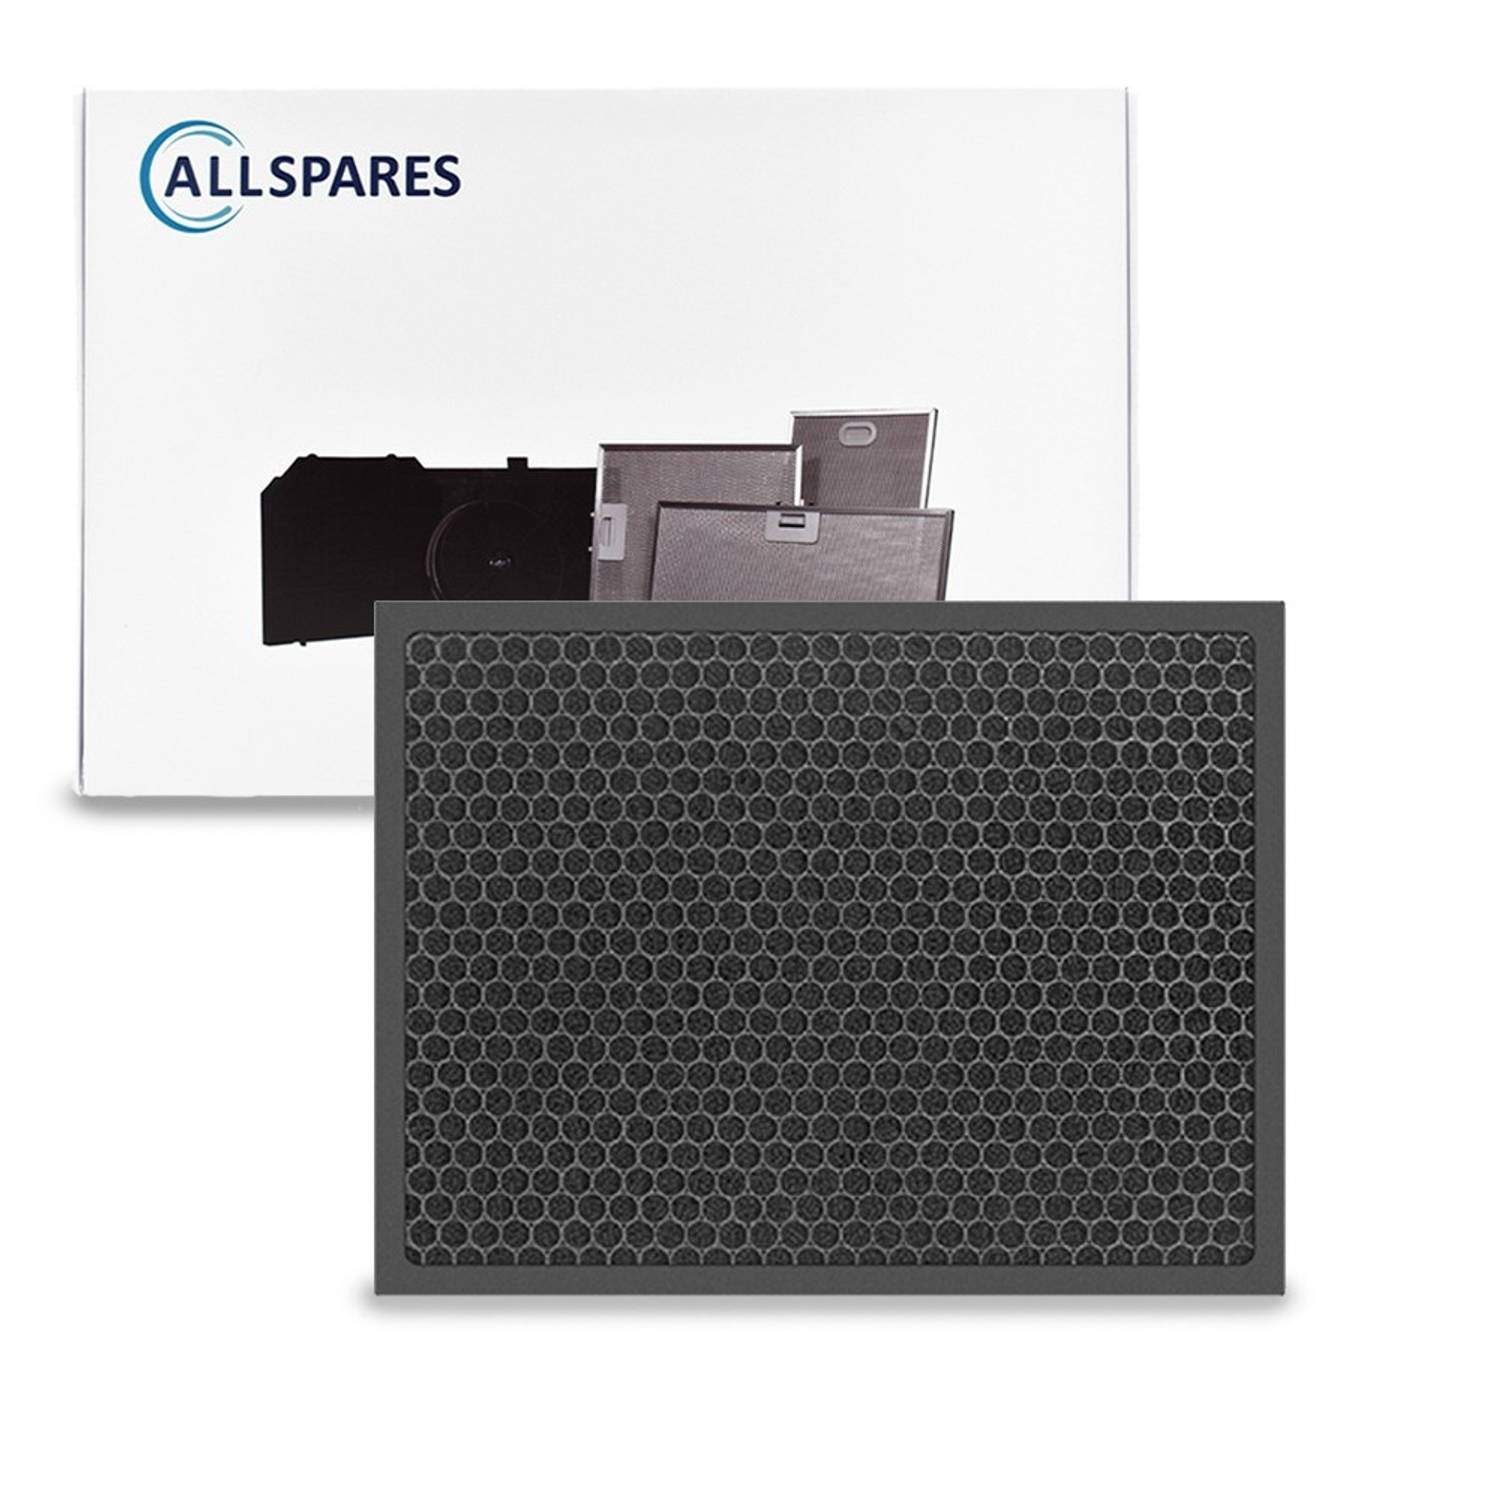 AllSpares Koolstoffilter voor Luchtreinigers geschikt voor Philips FY2420/30 (362x276x10mm)